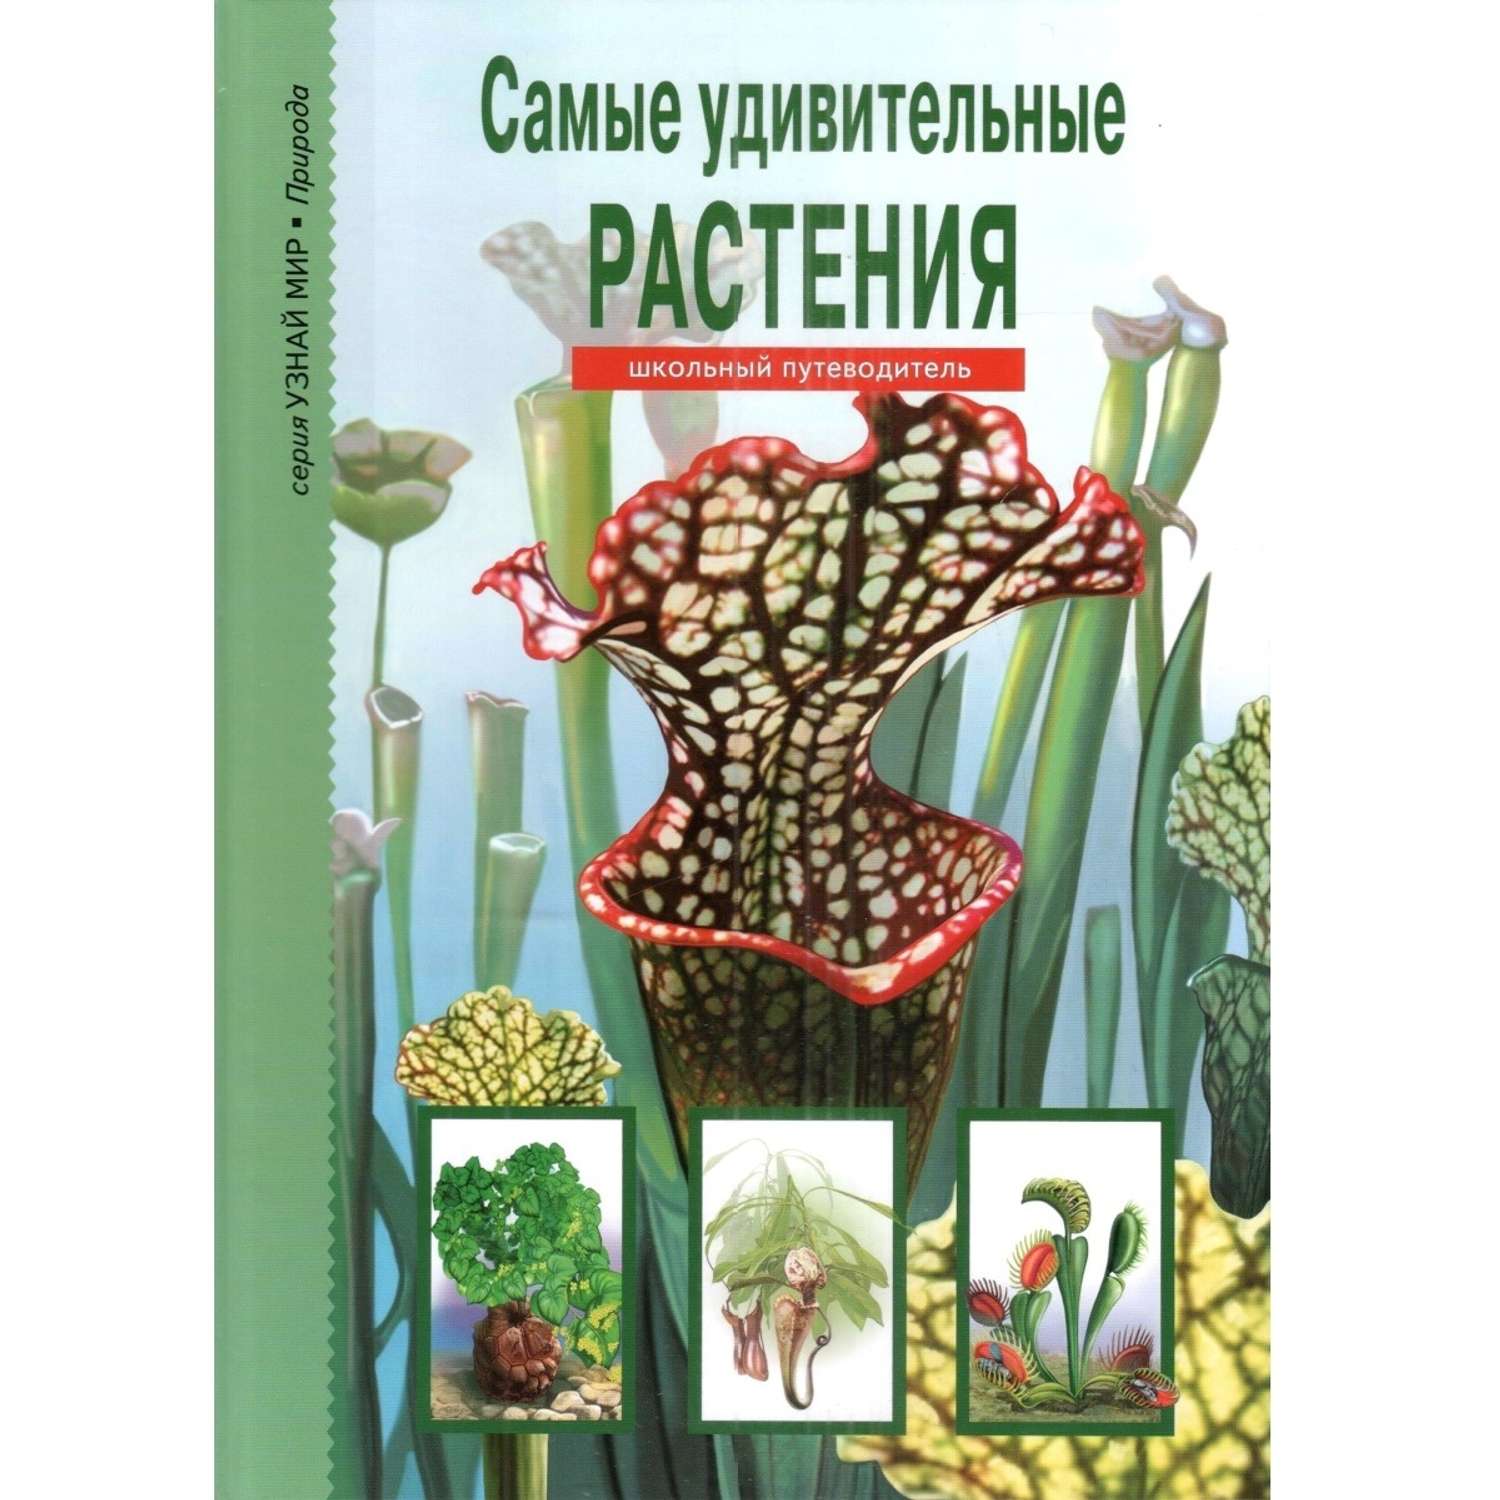 Книга Лада Самые удивительные растения. Школьный путеводитель - фото 1